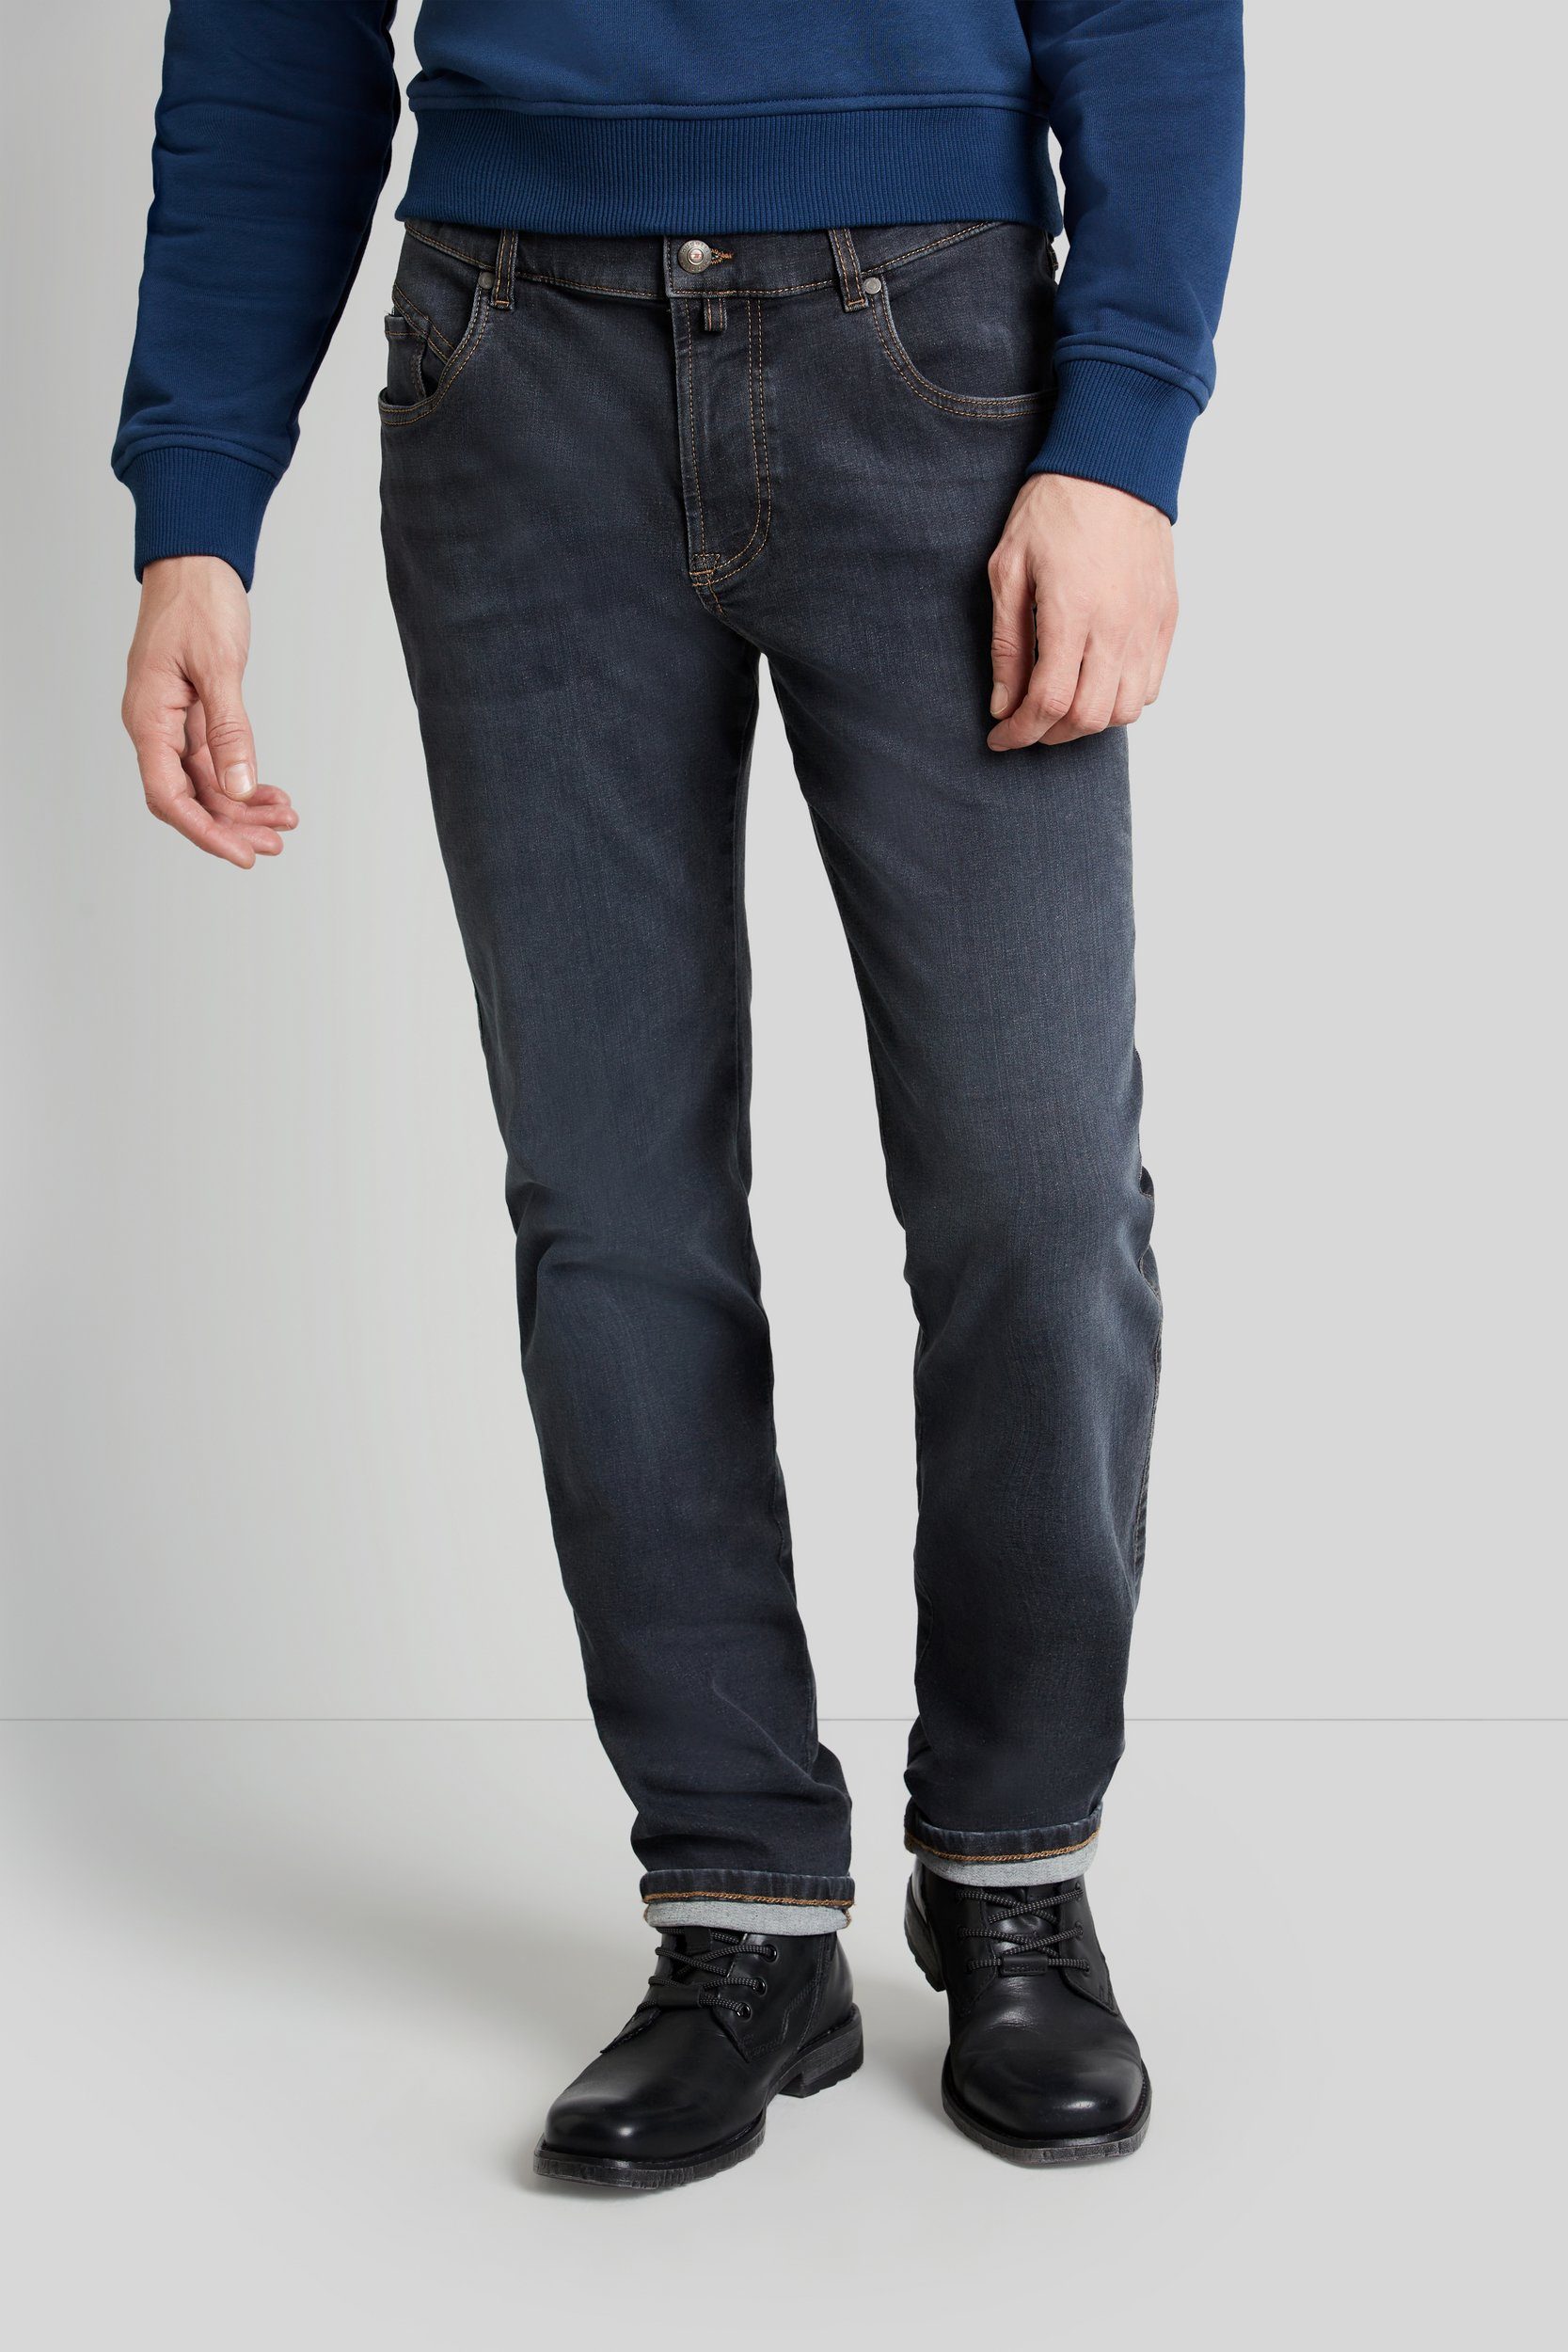 bugatti 5-Pocket-Jeans Flexcity Denim mit hohem Tragekomfort marine